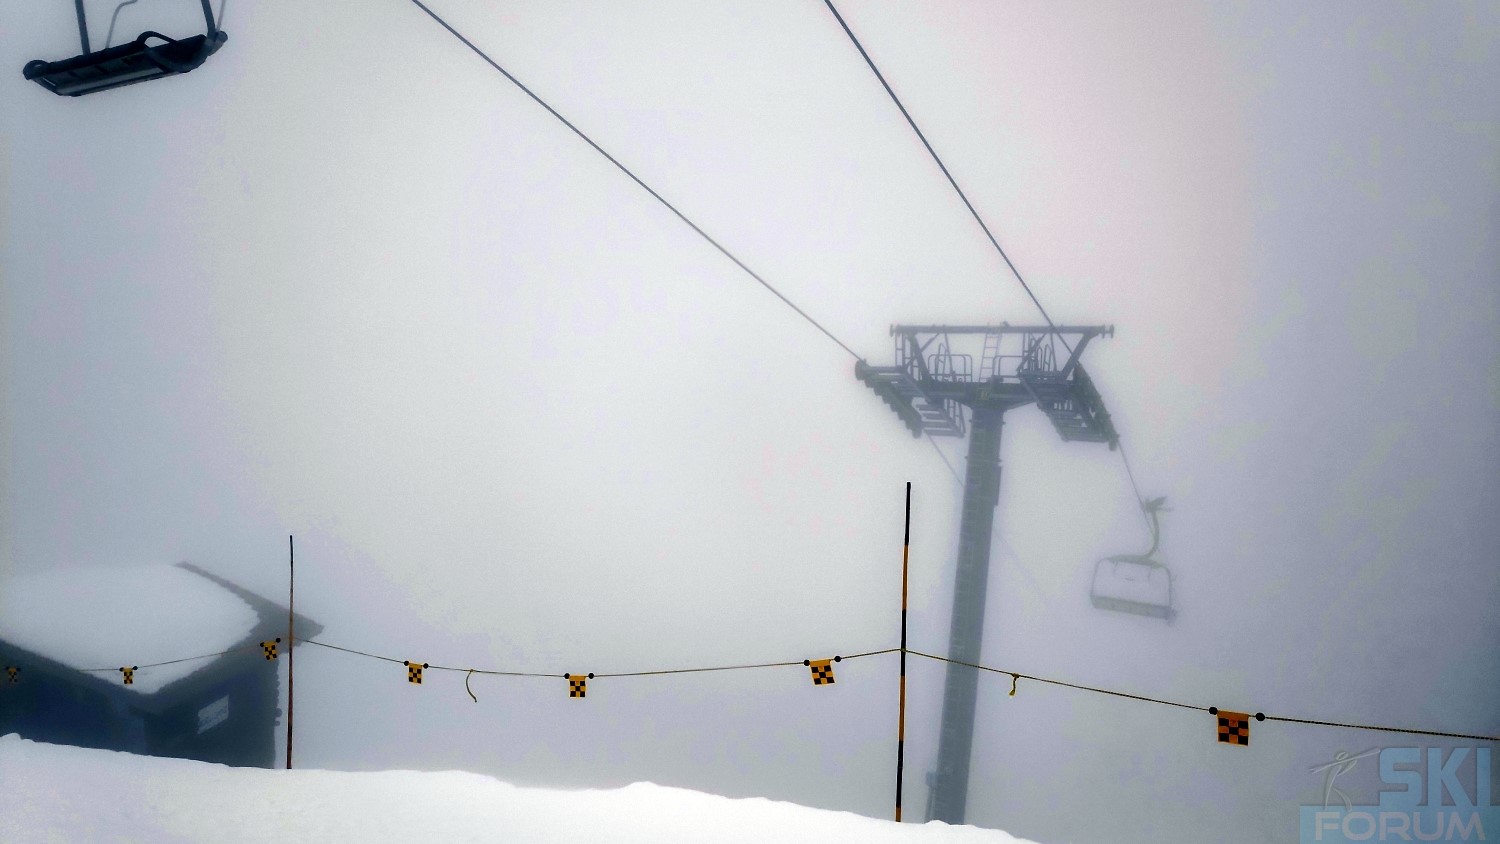 293678-ski-brigels-sciare-grigioni-suisse-84.jpg